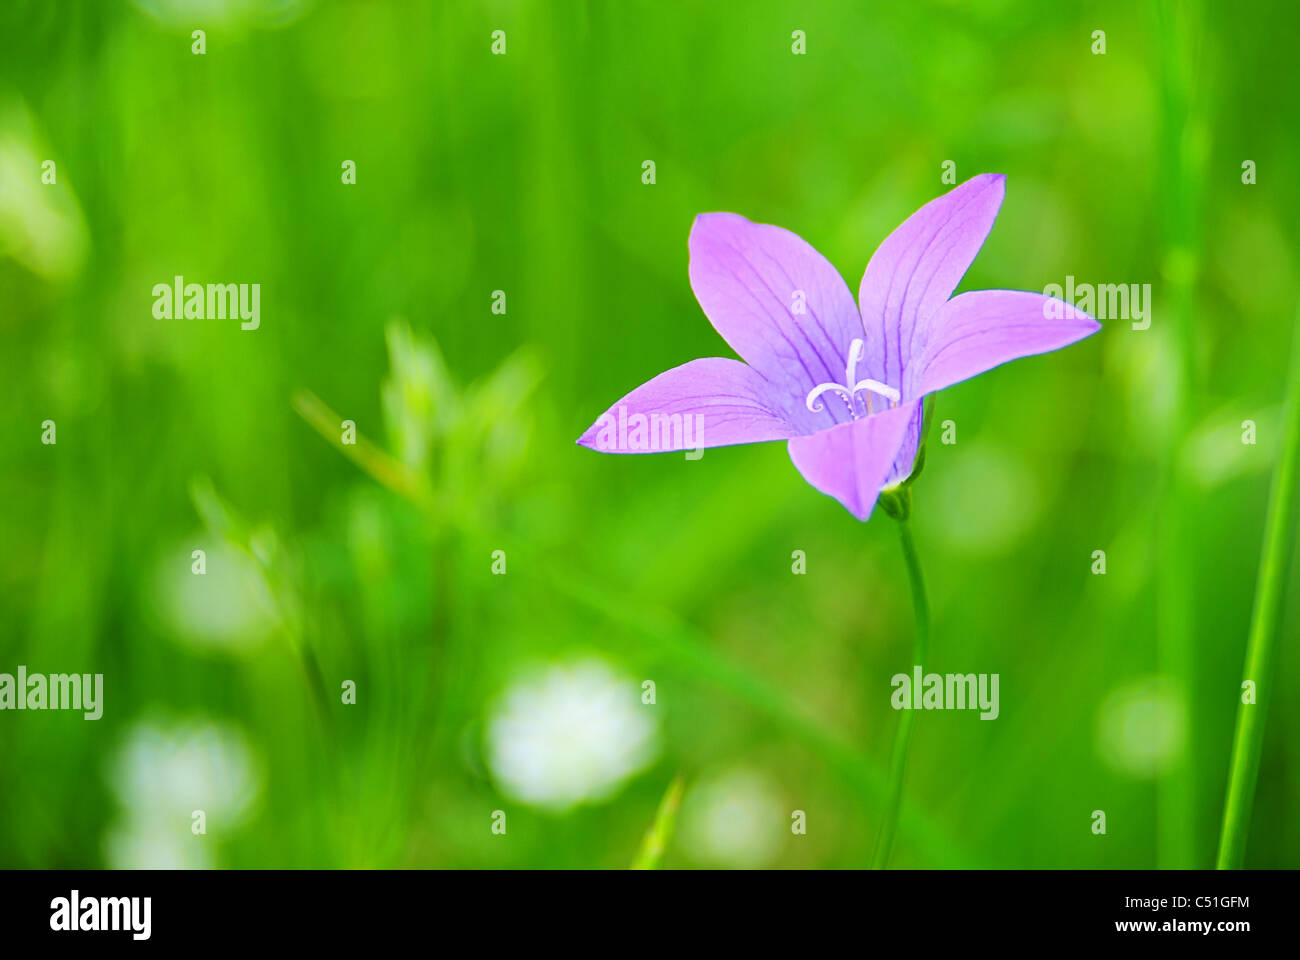 Wiesenglockenblume - Verbreitung Glockenblume 01 Stockfoto